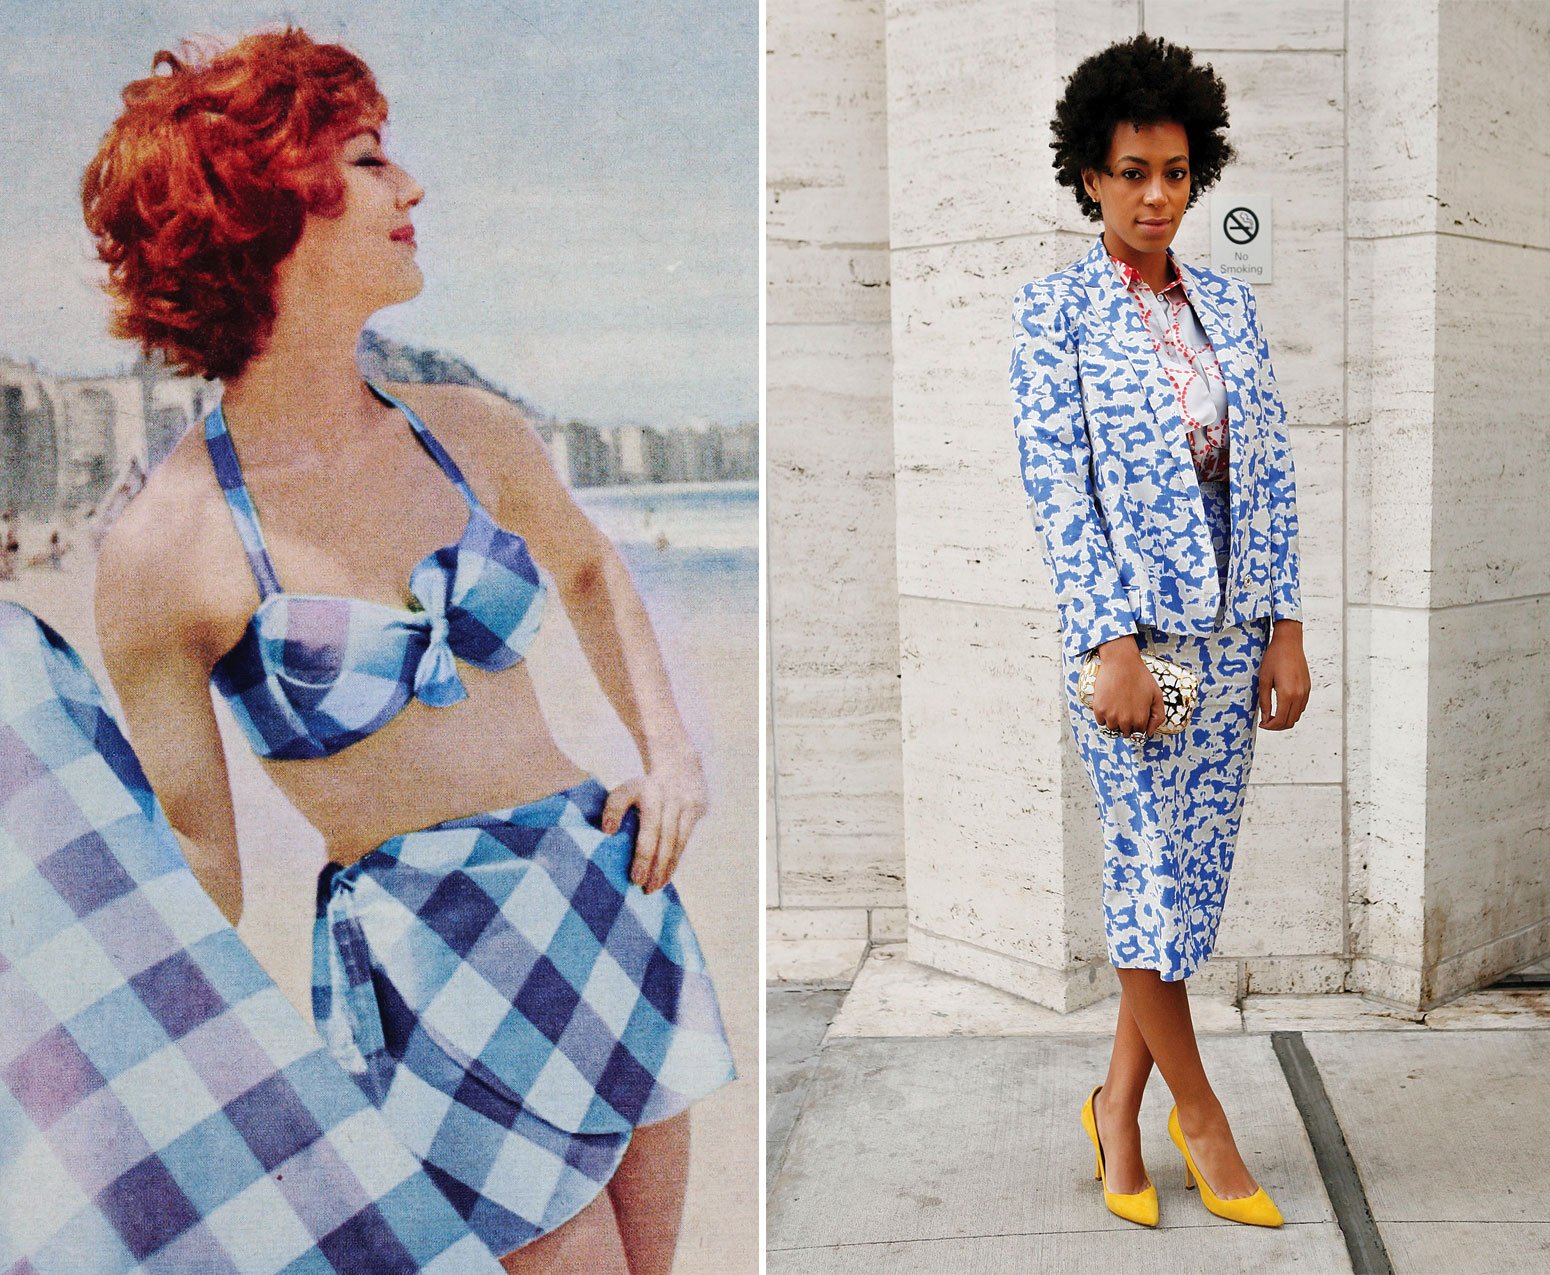 Fashion flashback to 1959: Layered patterns